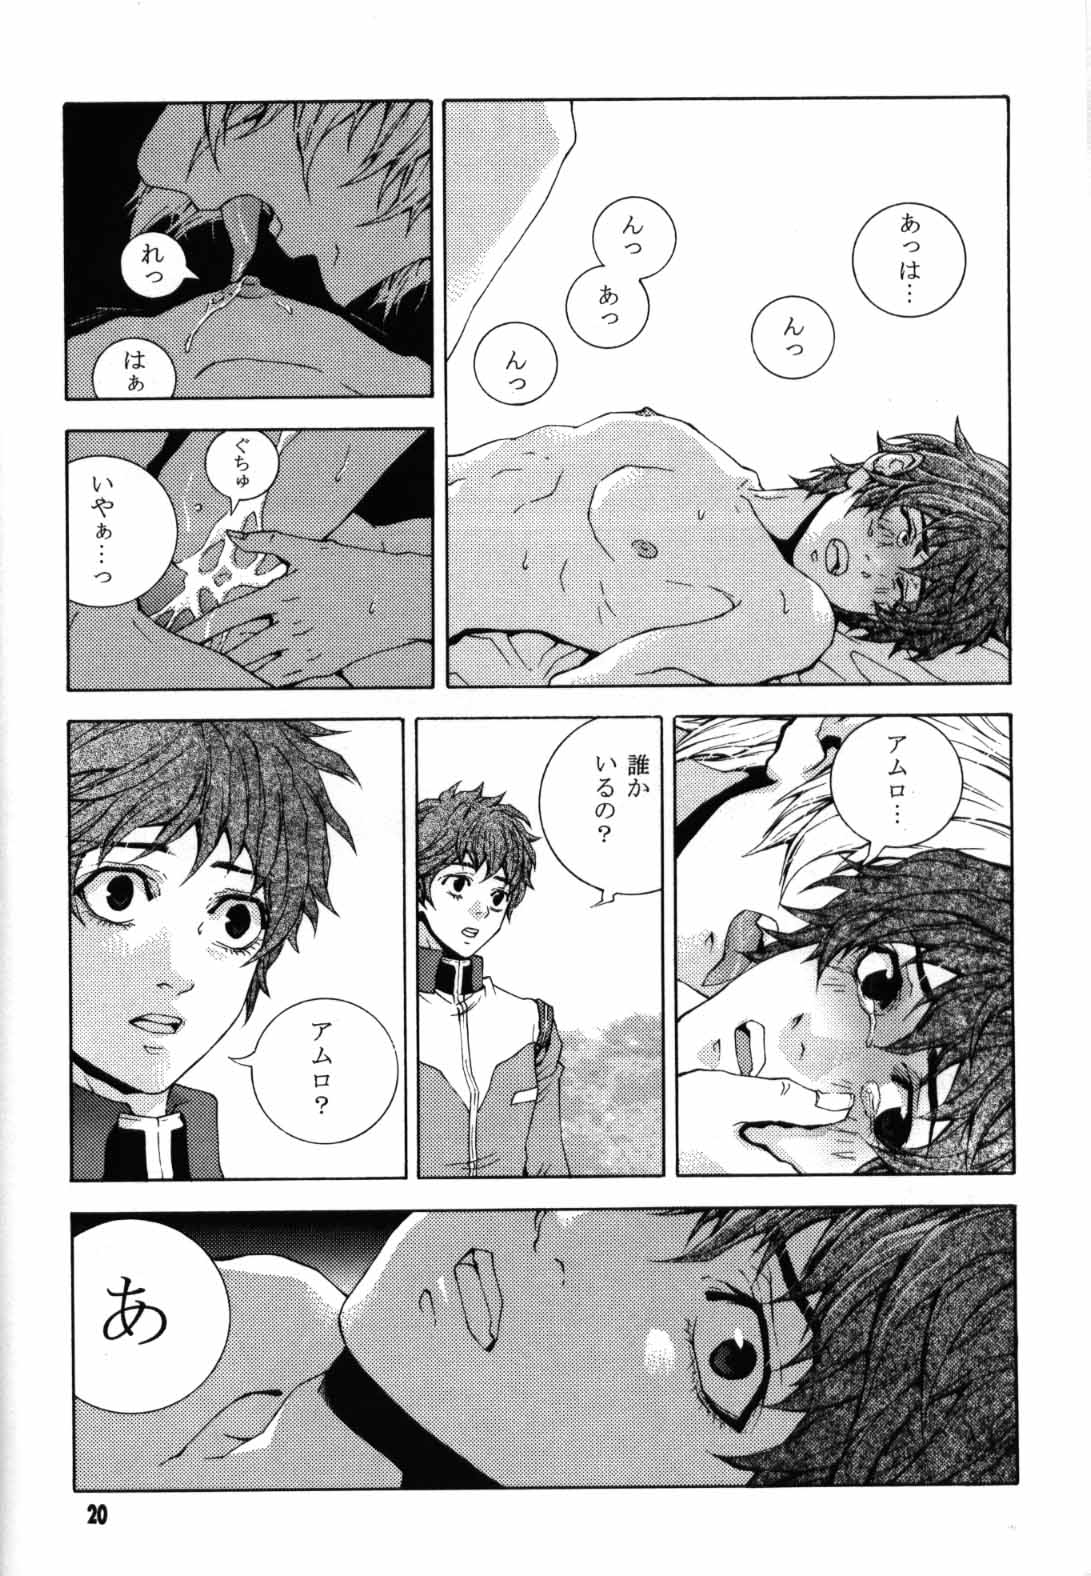 [APART (Yanagisawa Yukio)] Koi no you na Bakemono ga. (Zeta Gundam) page 18 full